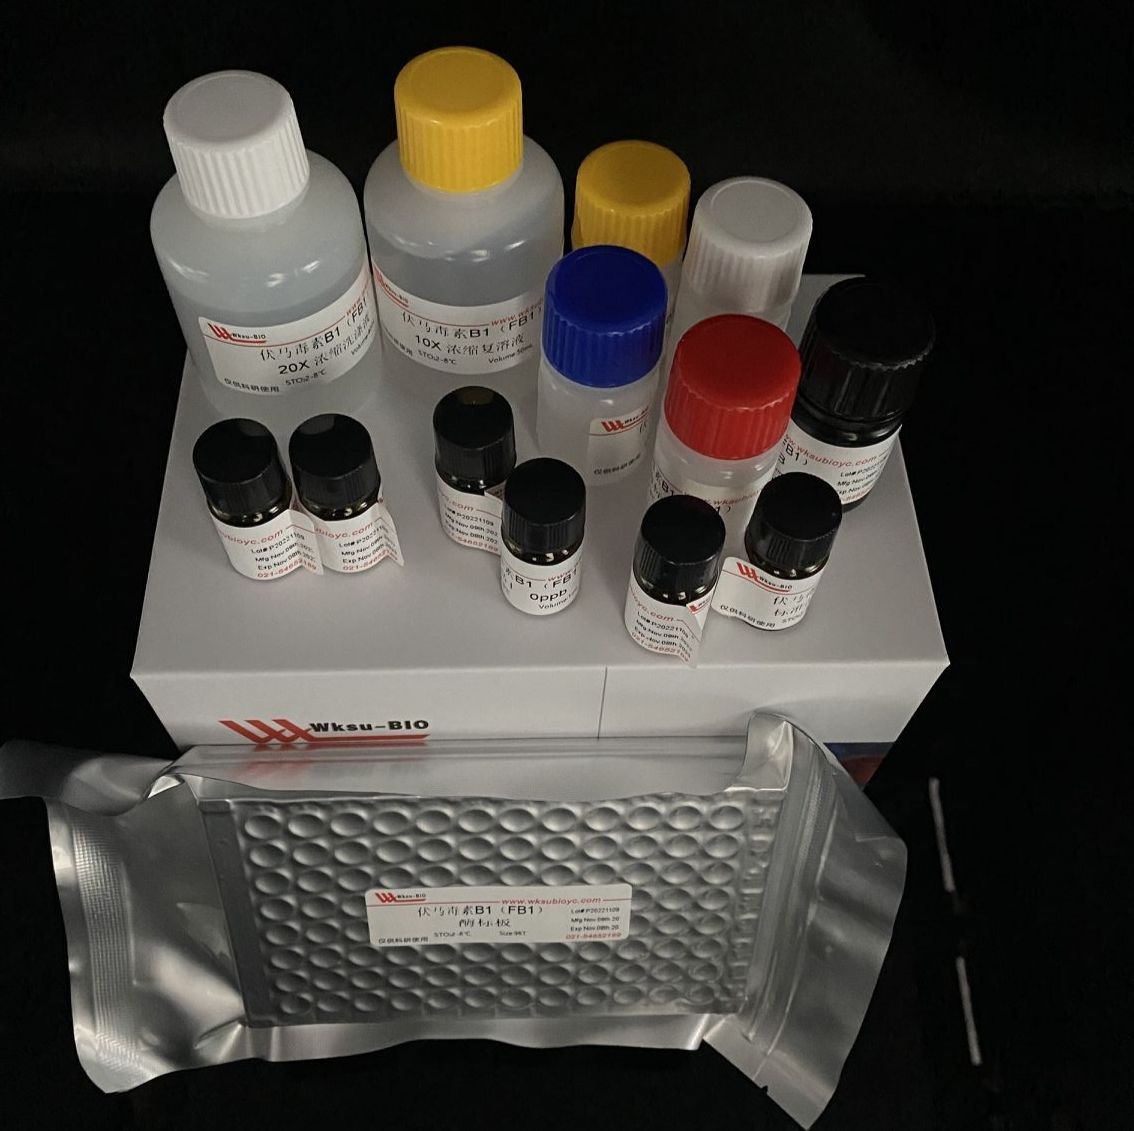 二磷酸核酮糖羧化酶(Rubisco)试剂盒,微板法